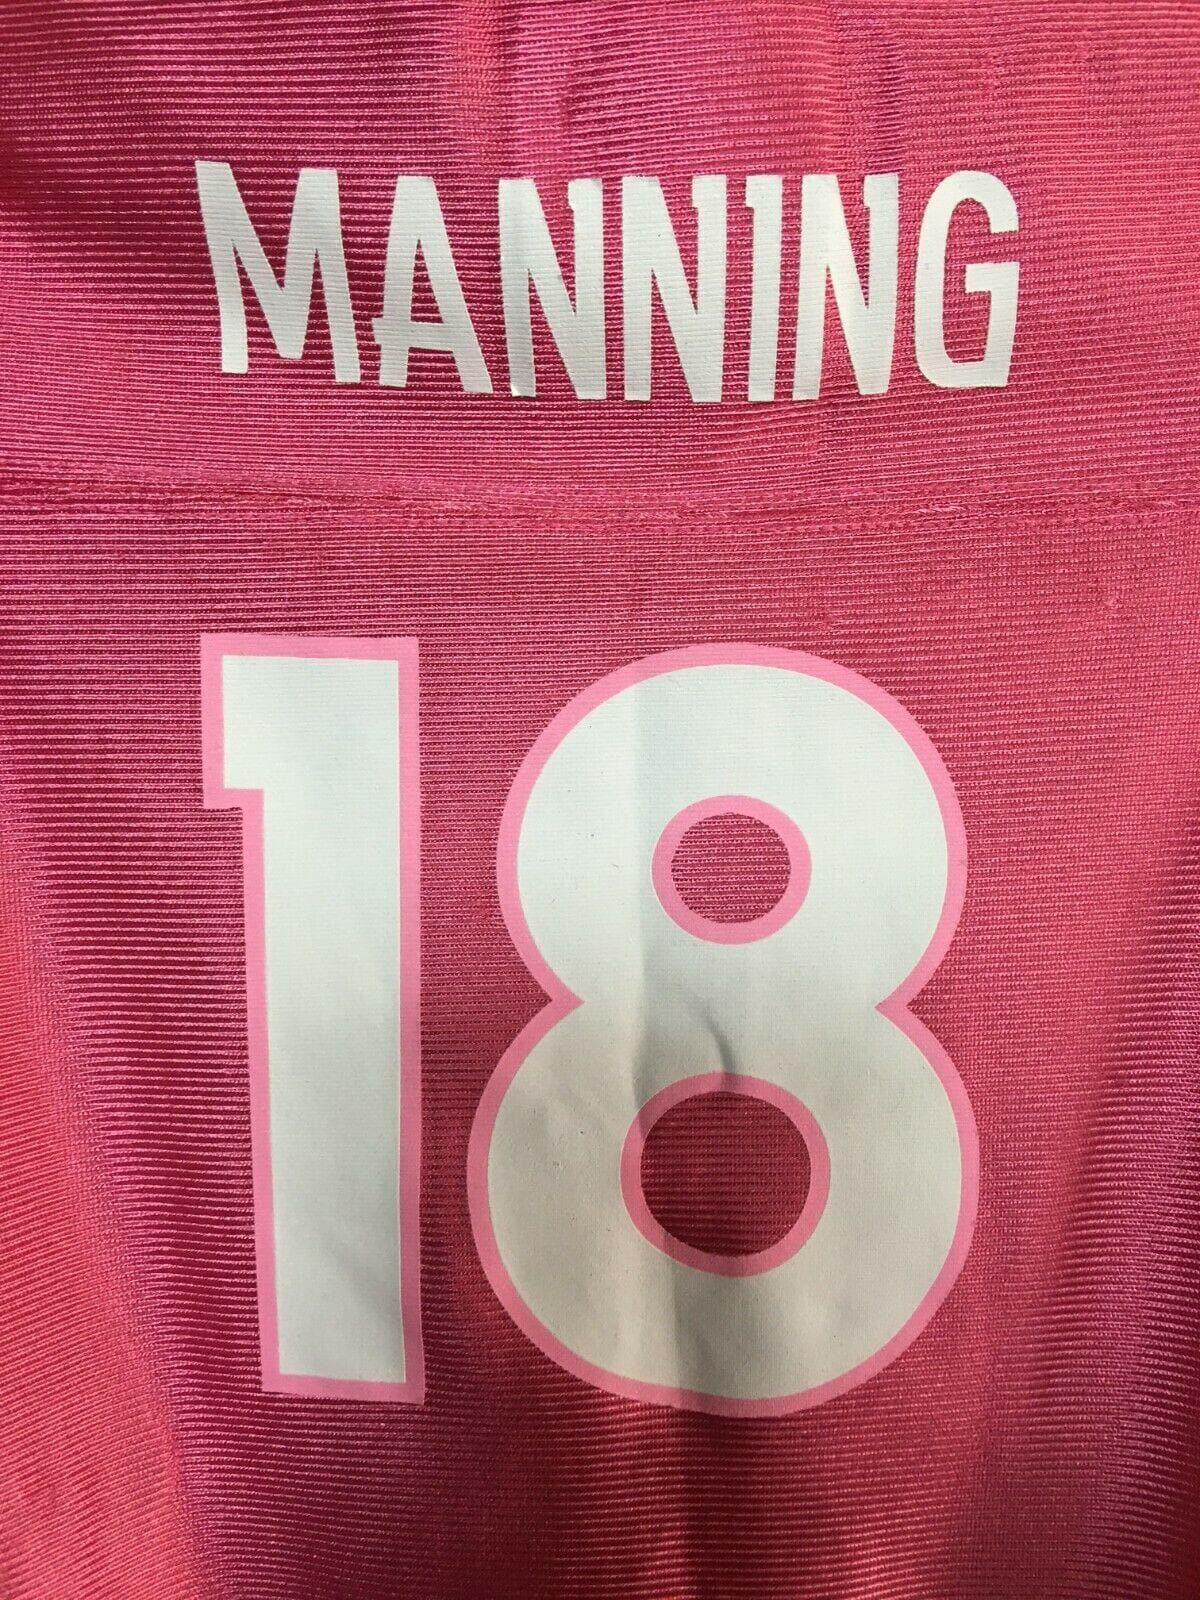 NFL Denver Broncos Peyton Manning #18 Pink Bodysuit/Vest 12 Months